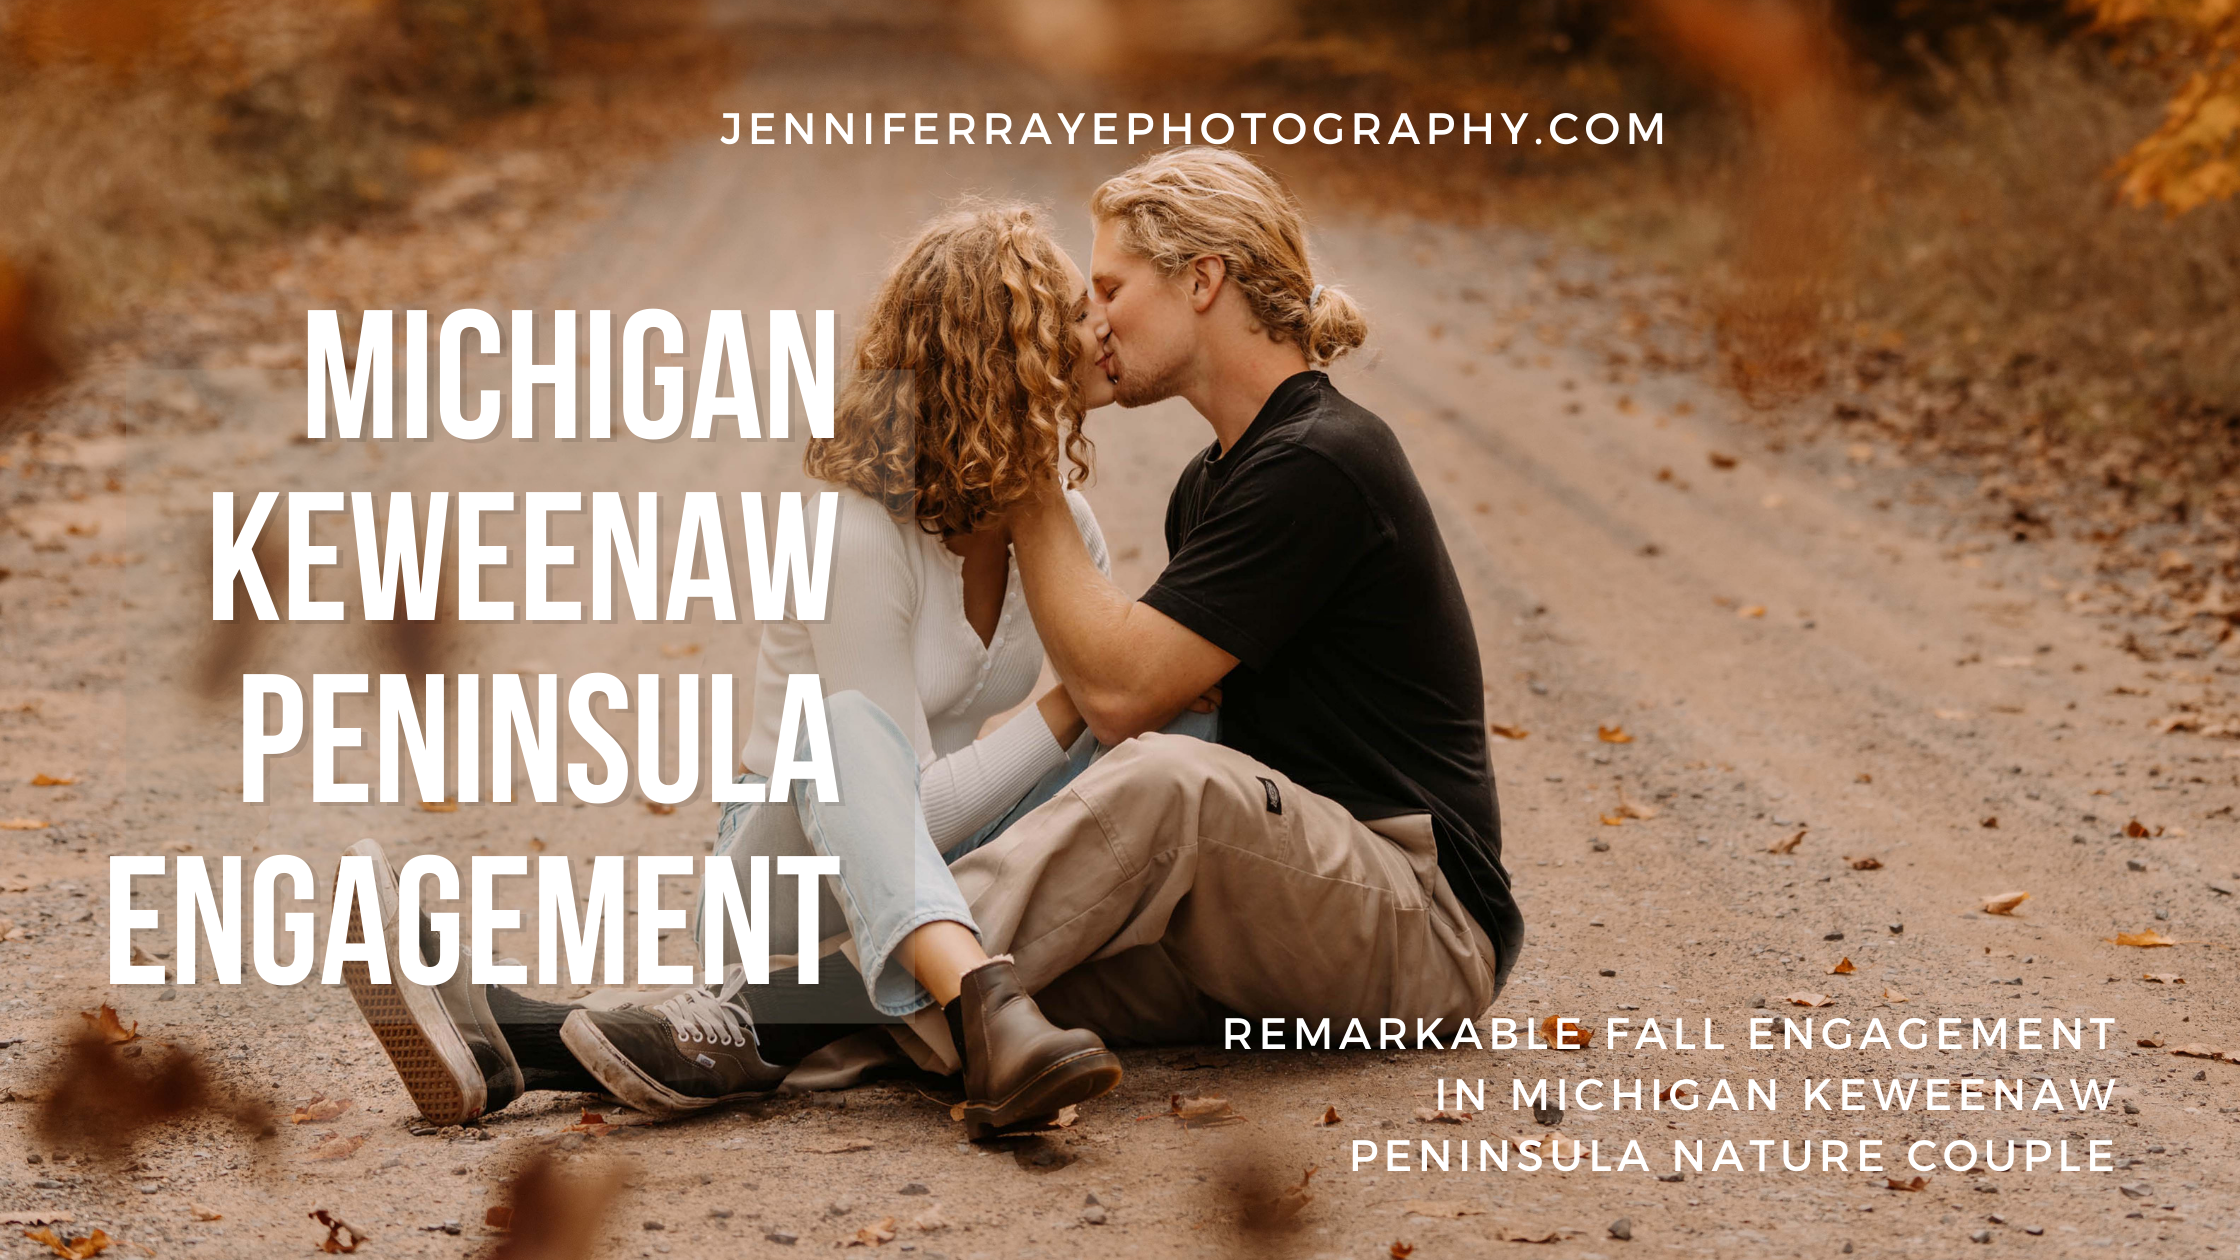 Michigan-Keweenaw-Peninsula-Engagement